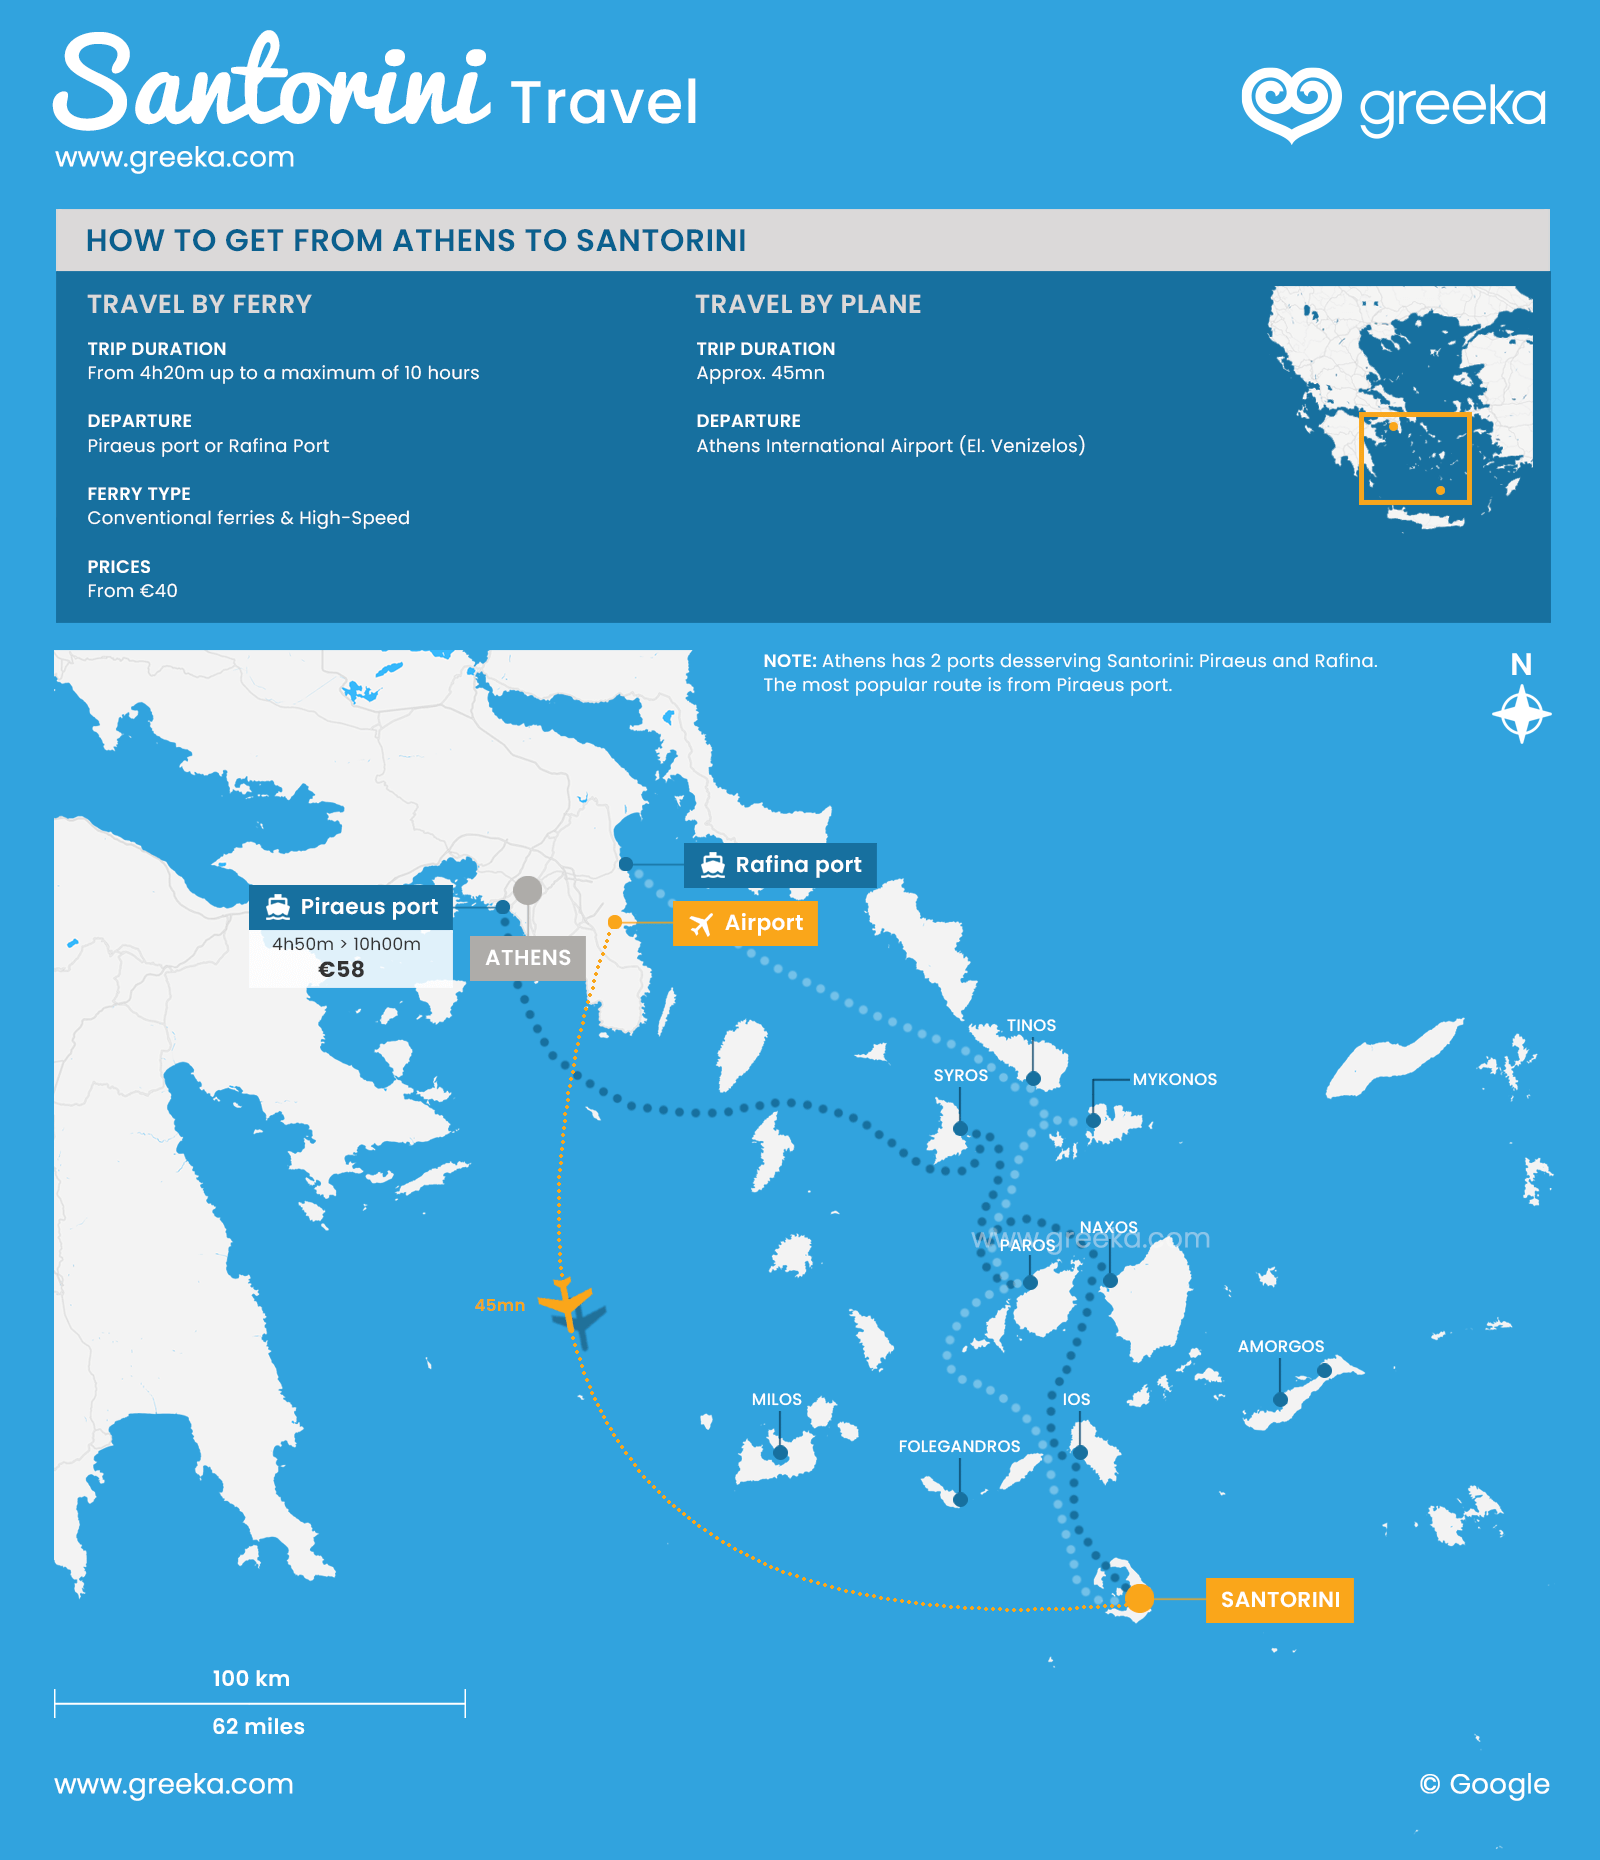  De Atenas a Santorini: en ferry ou en avión